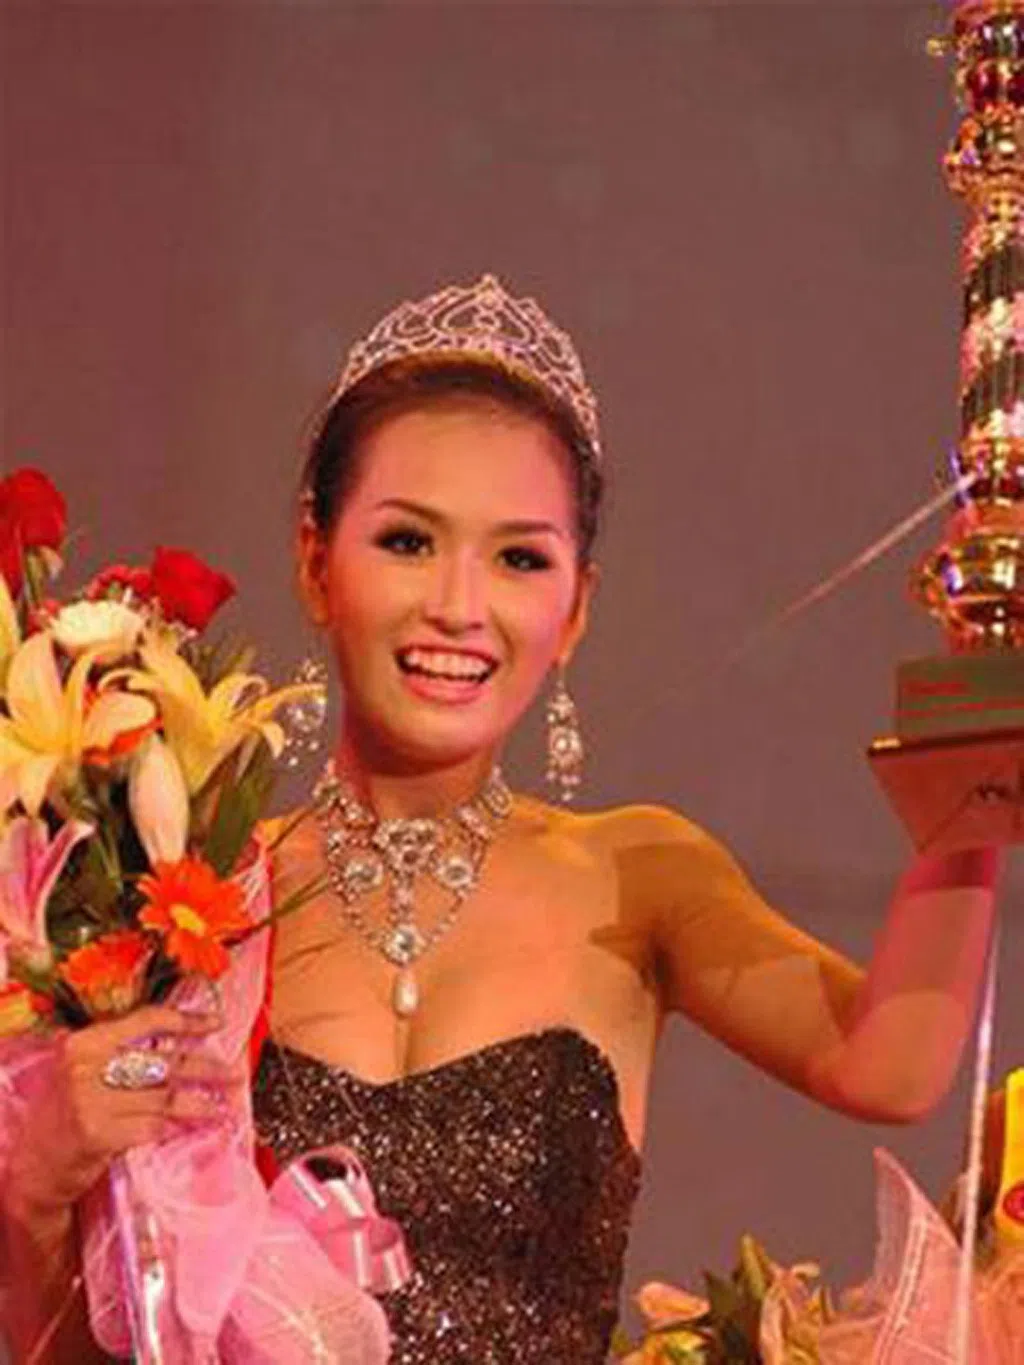 Hoa hậu Việt Nam sở hữu chiều cao thấp nhất và cao nhất trong dàn người đẹp sau 34 năm